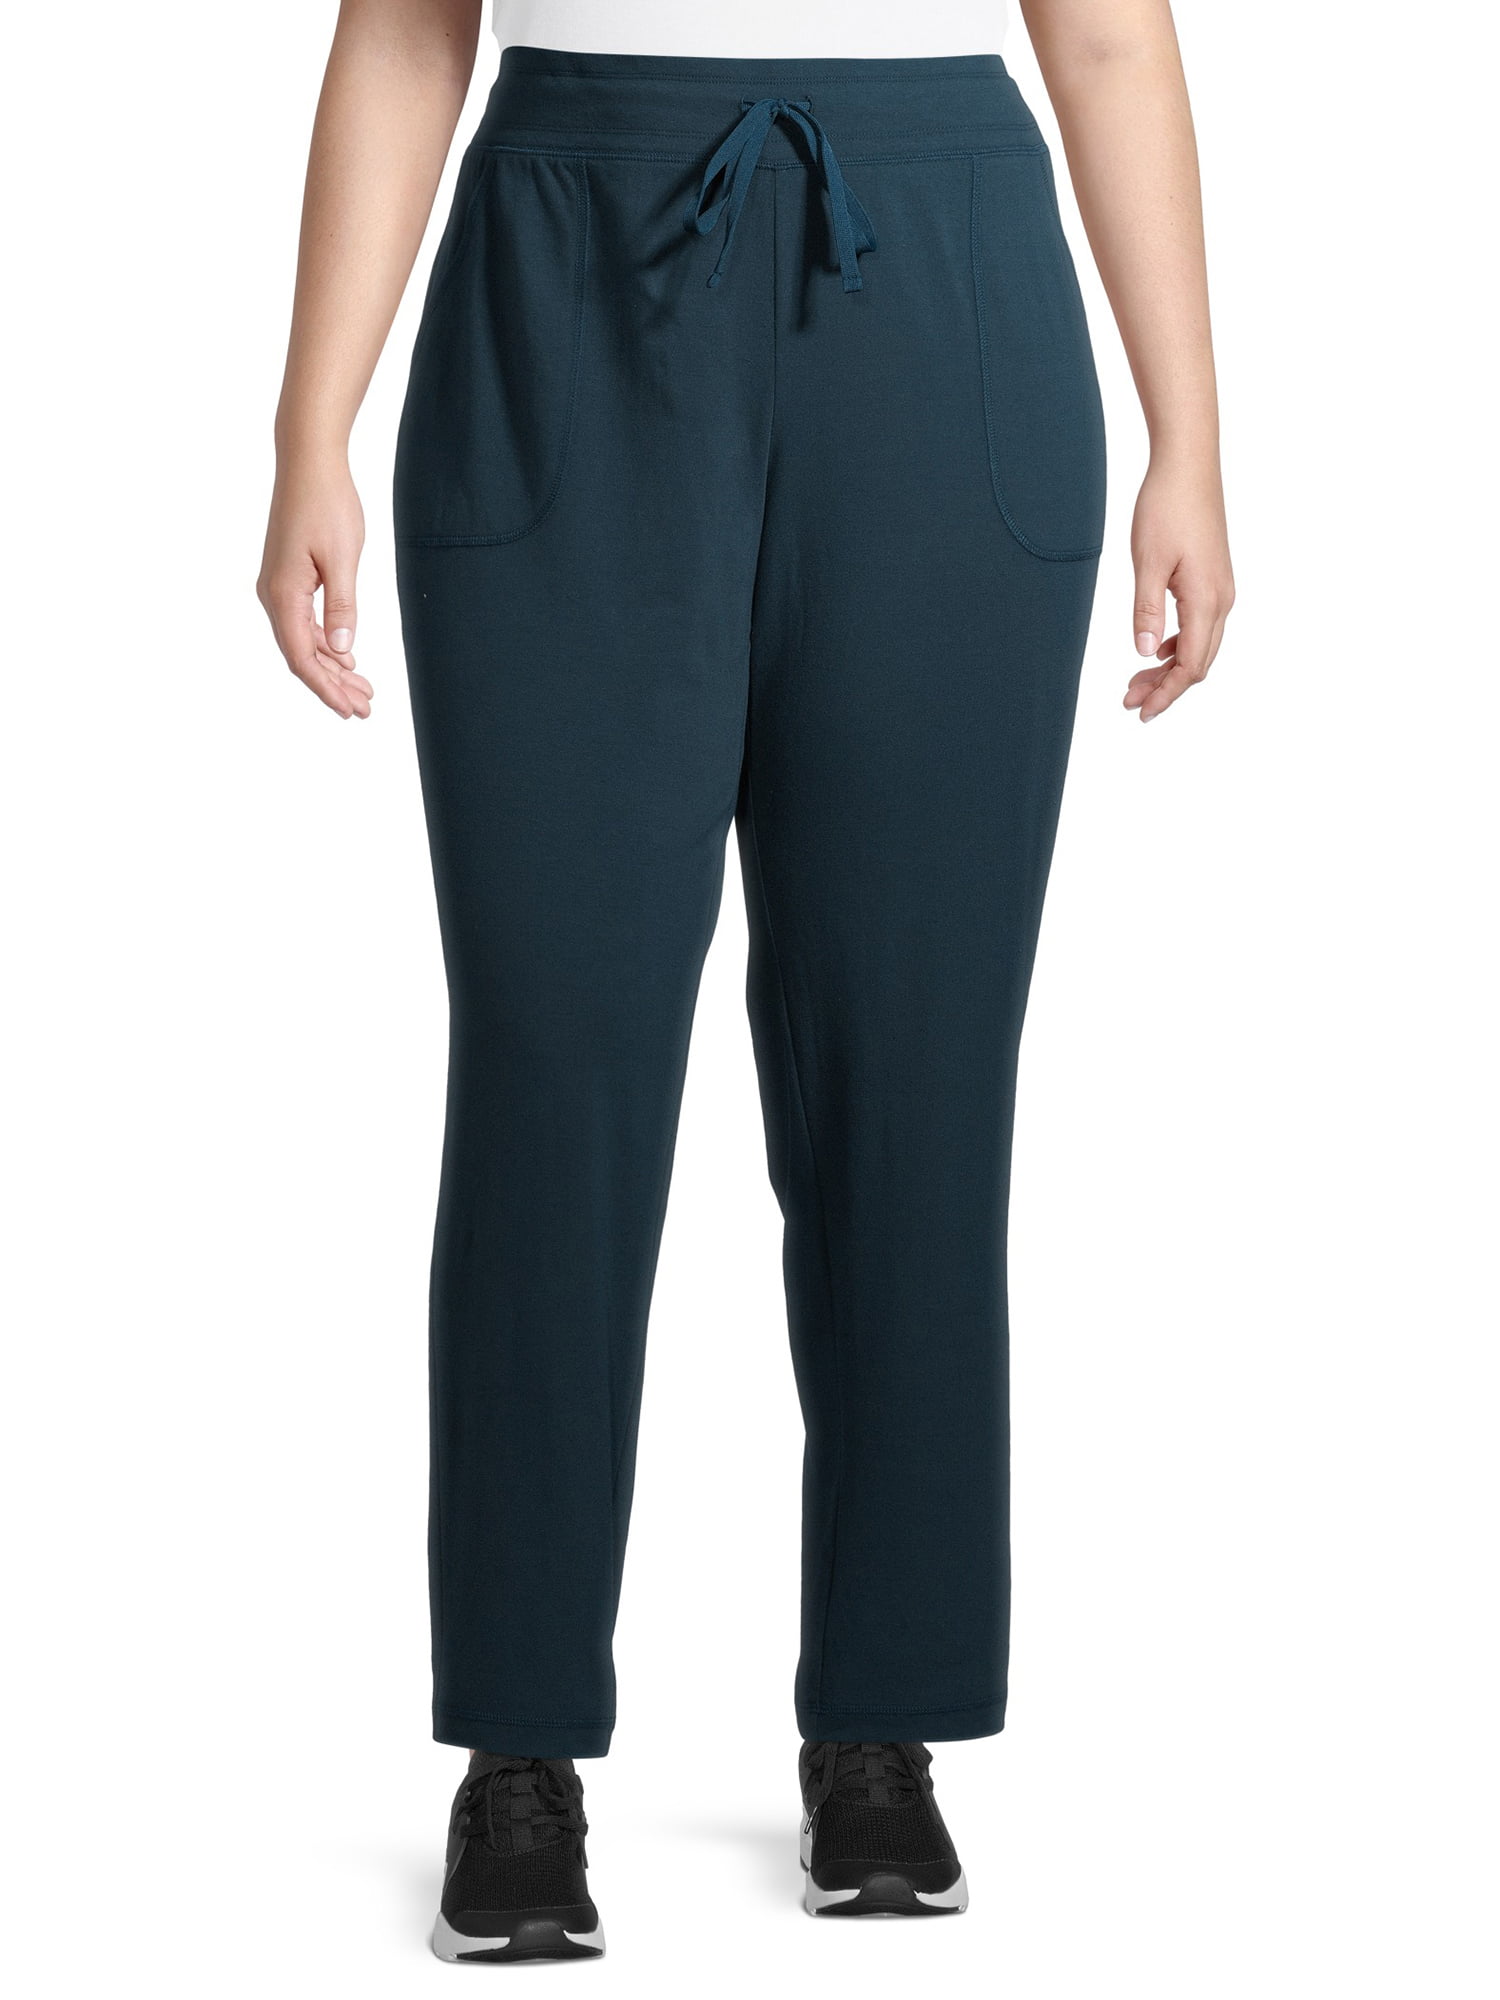 Athletic Works Women's Plus Size Core Knit Pants - Walmart.com